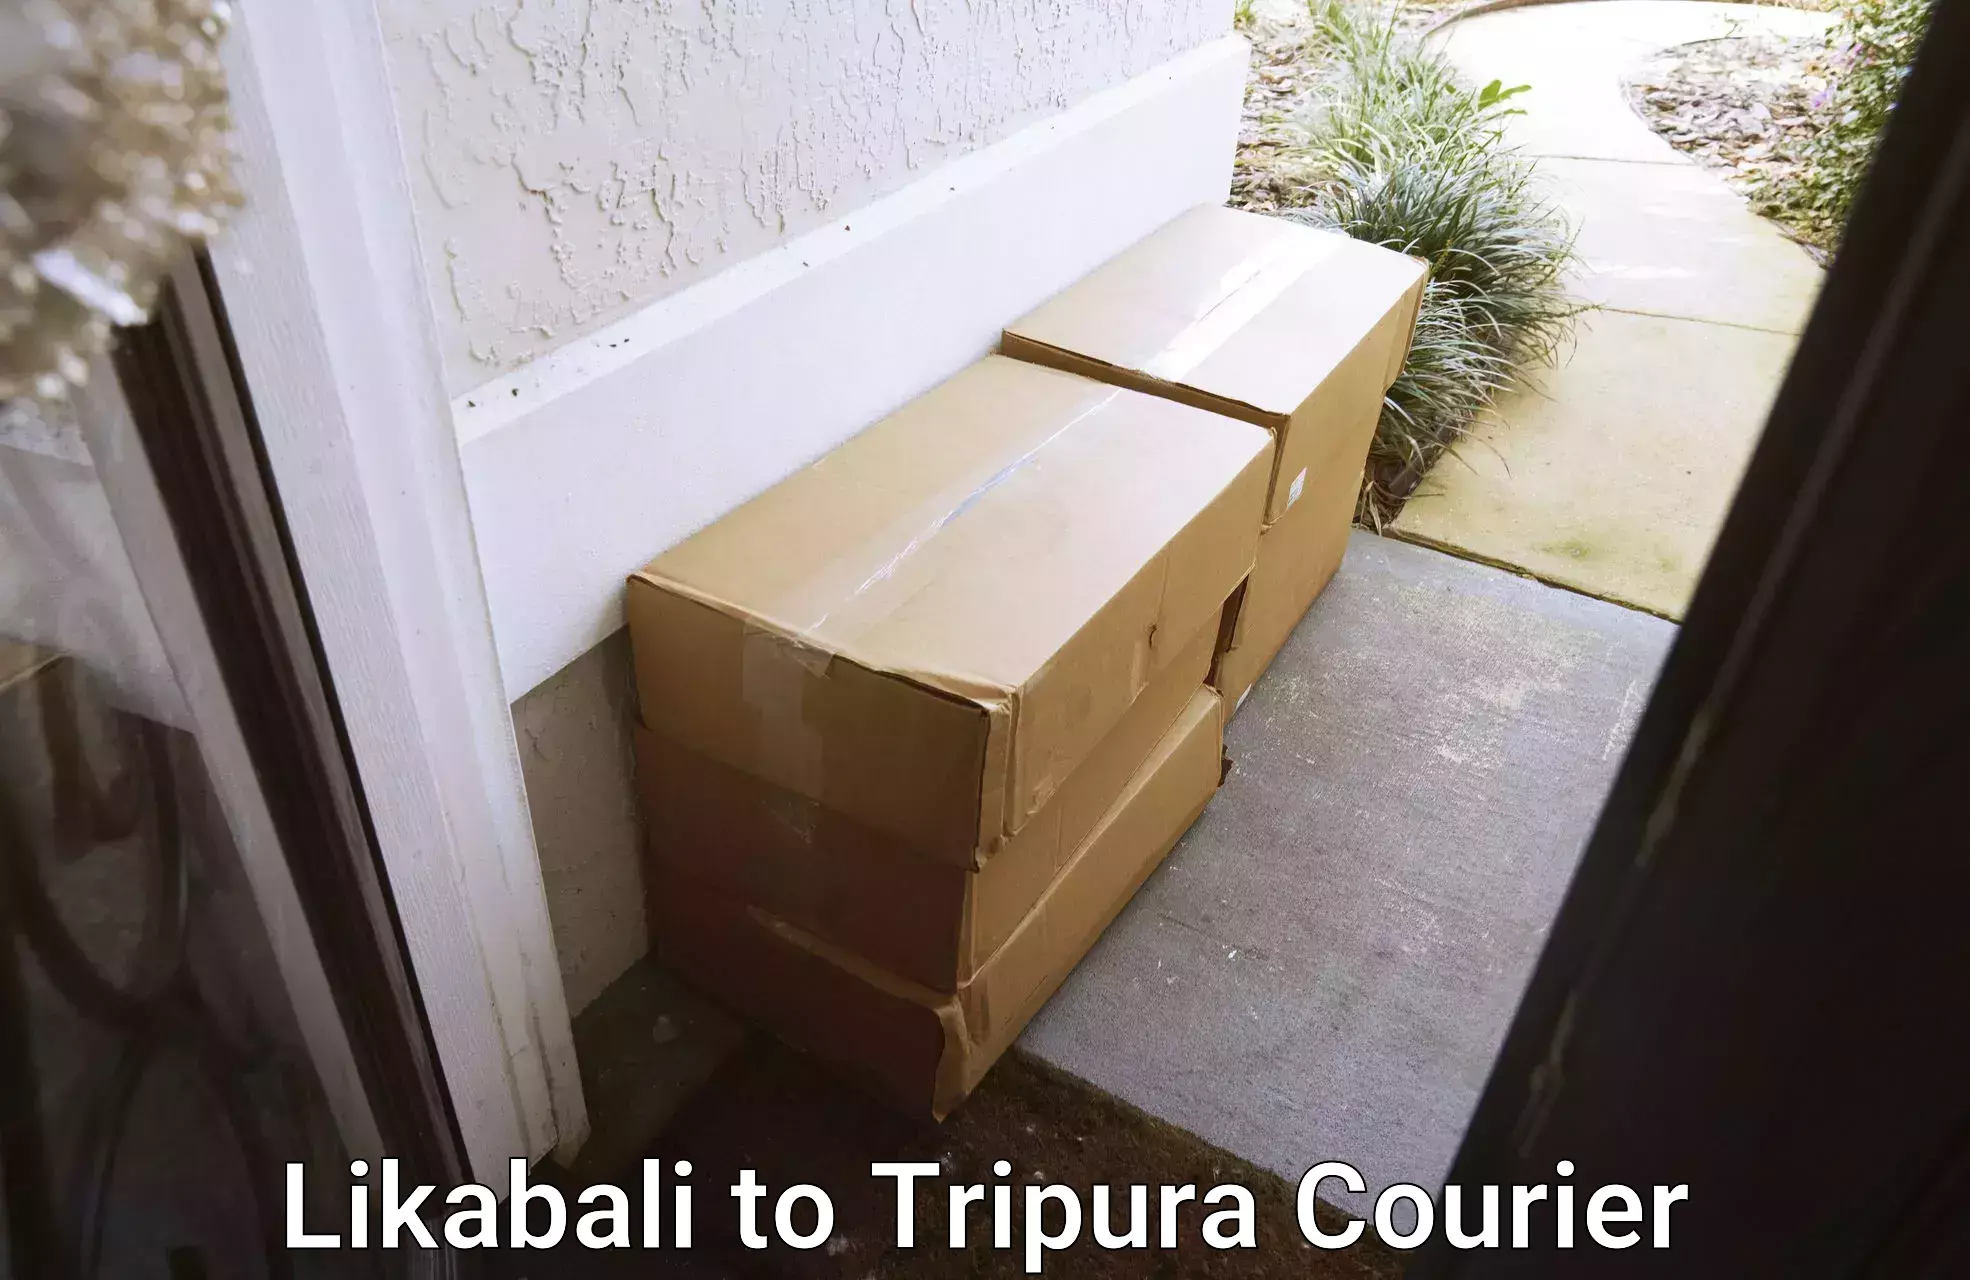 Local courier options Likabali to IIIT Agartala